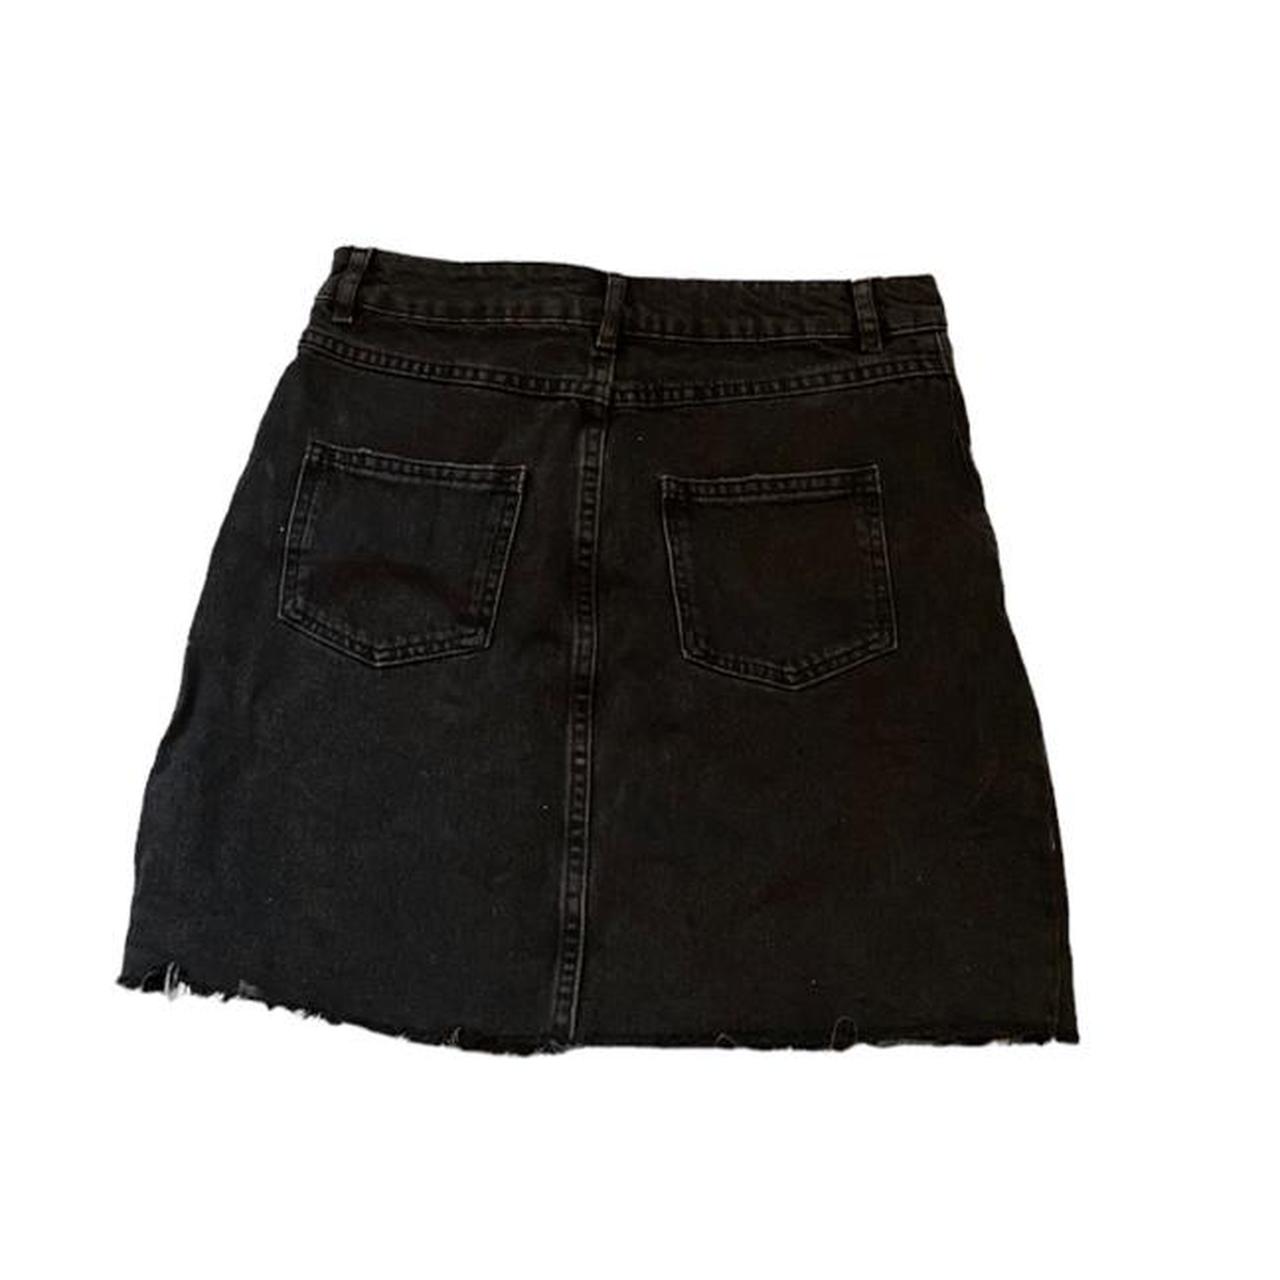 Denim, black, mini skirt Size: Small Please... - Depop